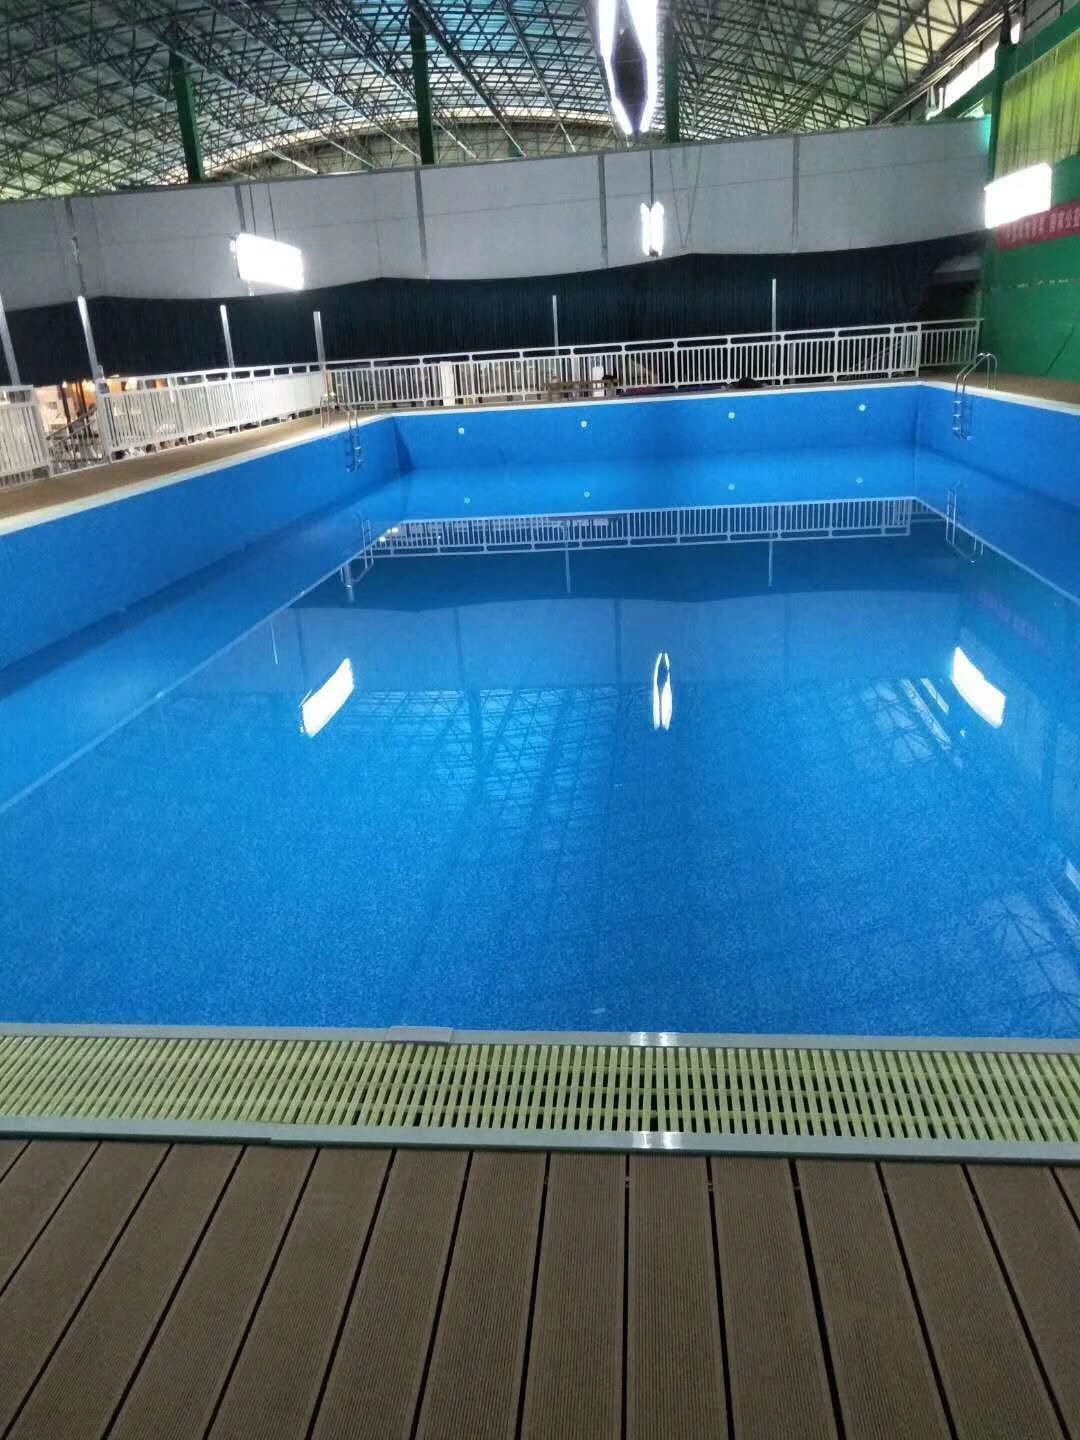 云南省芒市市钢结构拼装式泳池，拆装式泳池、整体游泳池、健身房泳池